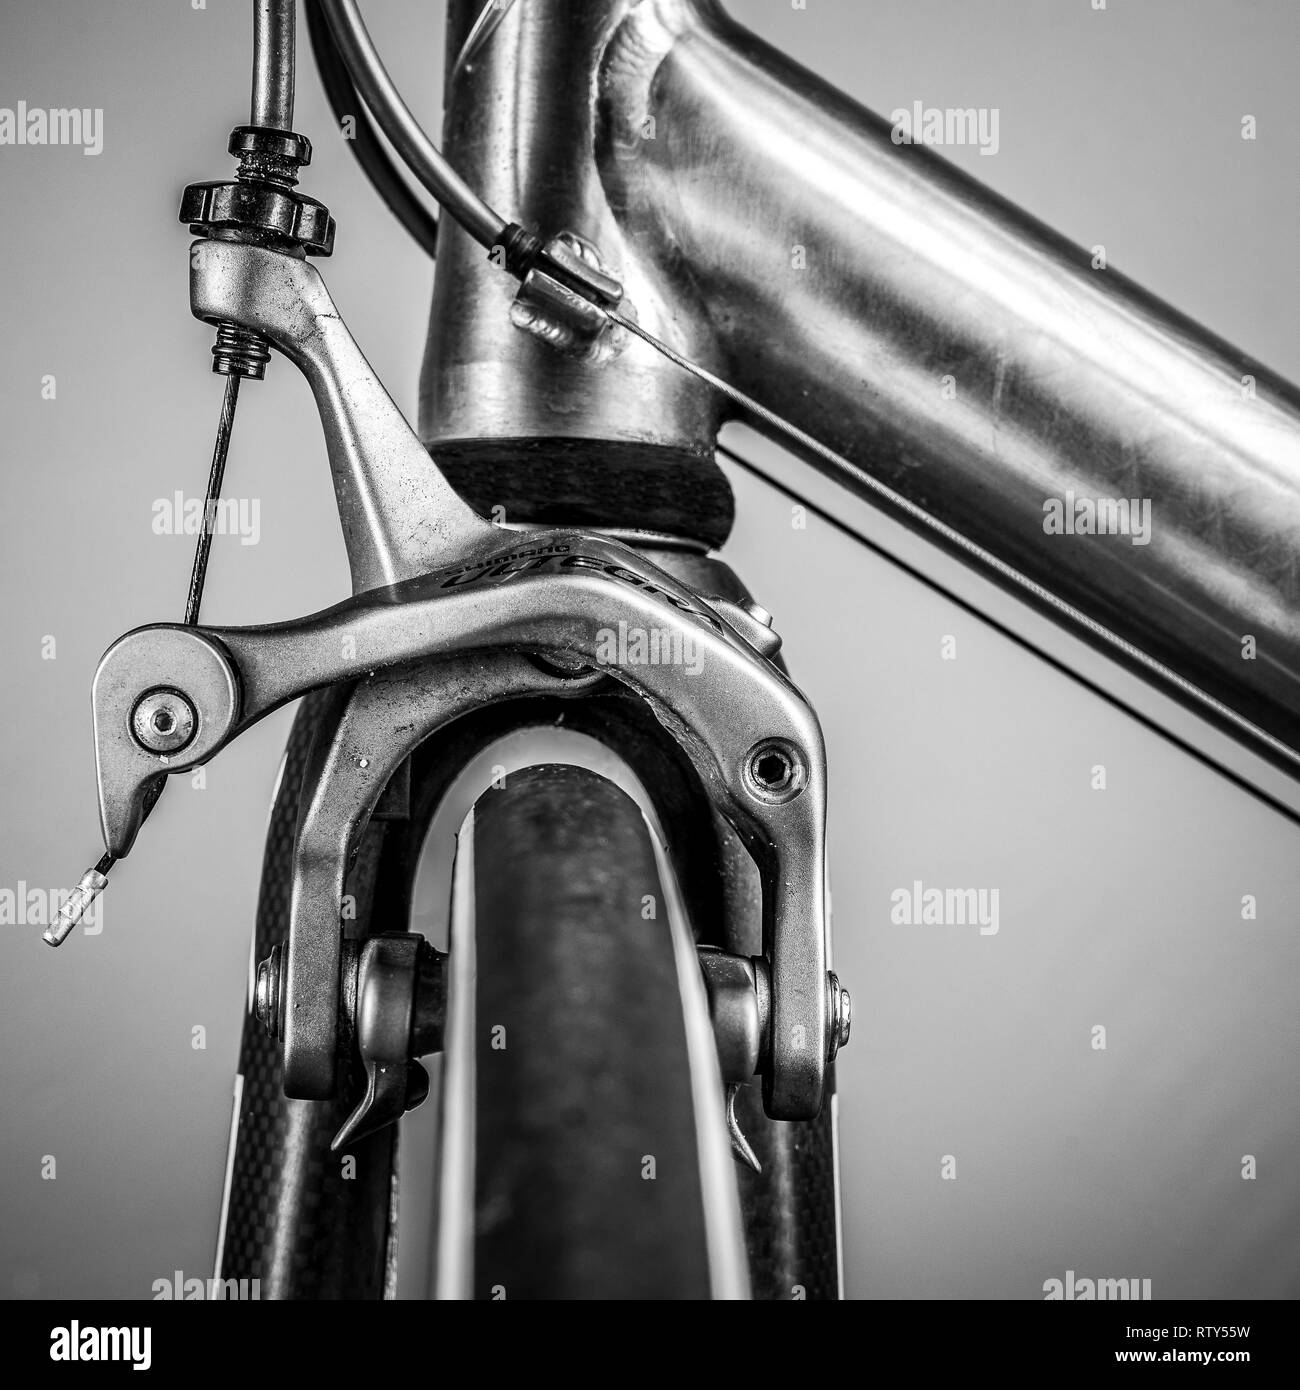 Frammento di un telaio e parti di una bici da corsa. Il telaio è realizzato in titanio e vi sono numerosi dettagli da vedere; qui è la ruota e le pastiglie dei freni Foto Stock